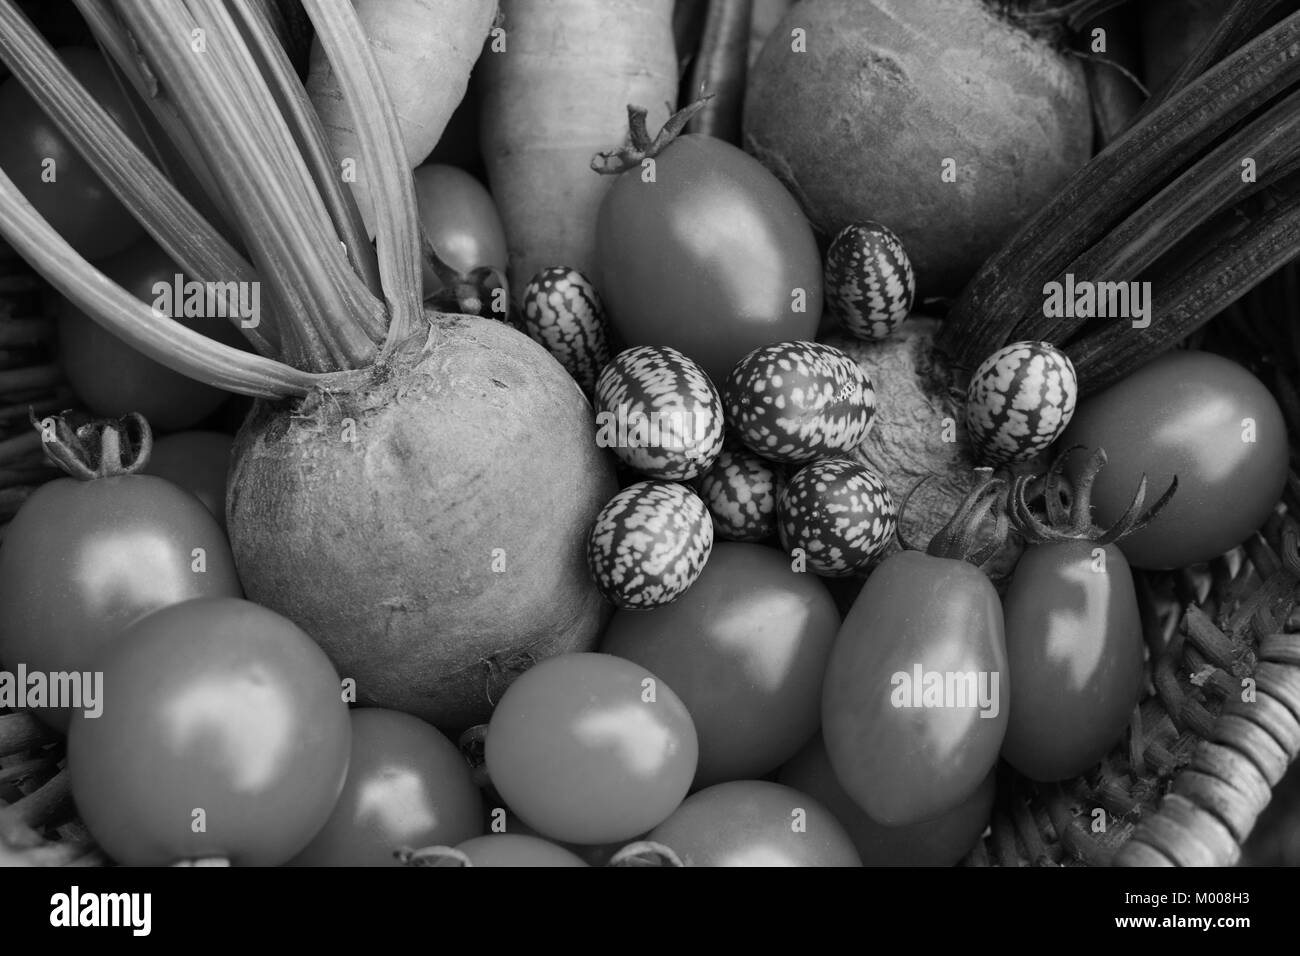 Close-up de tomates fraîches, de la betterave, cornichons aigre mexicain et les carottes dans un panier tissé - traitement monochrome Banque D'Images